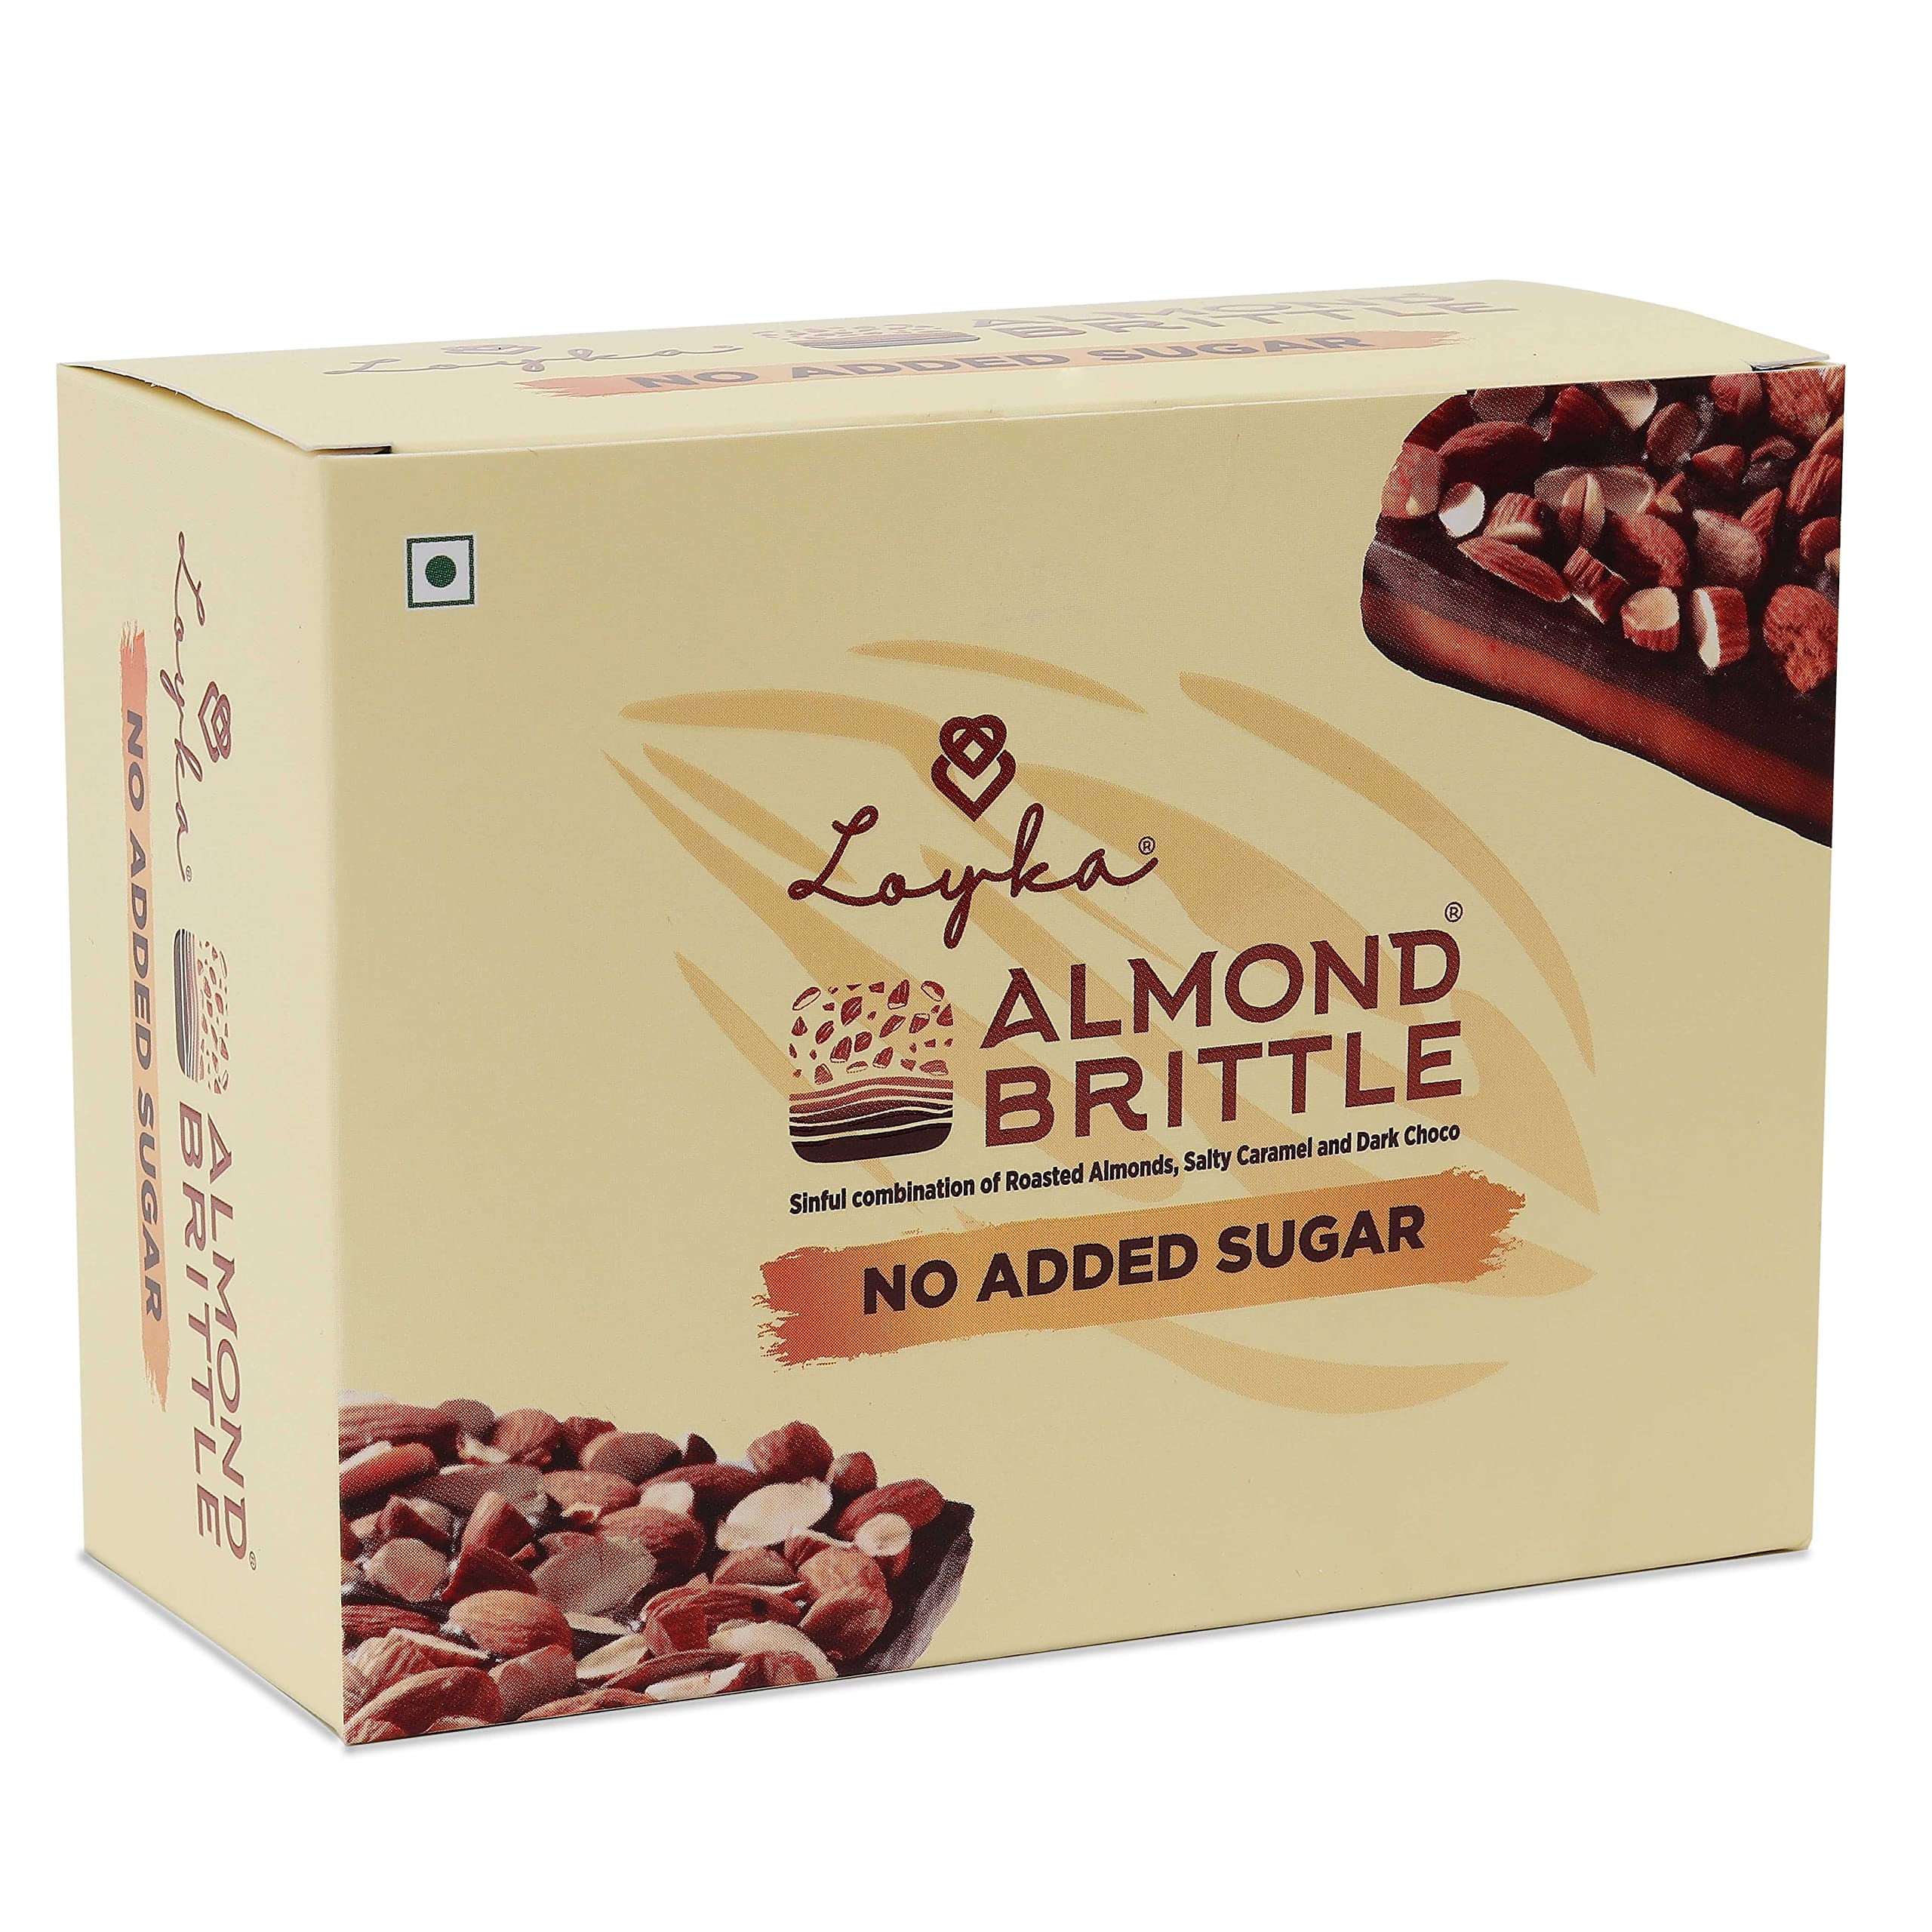 Loyka Almond Brittle No Added Sugar Choco Box - 8 Pcs